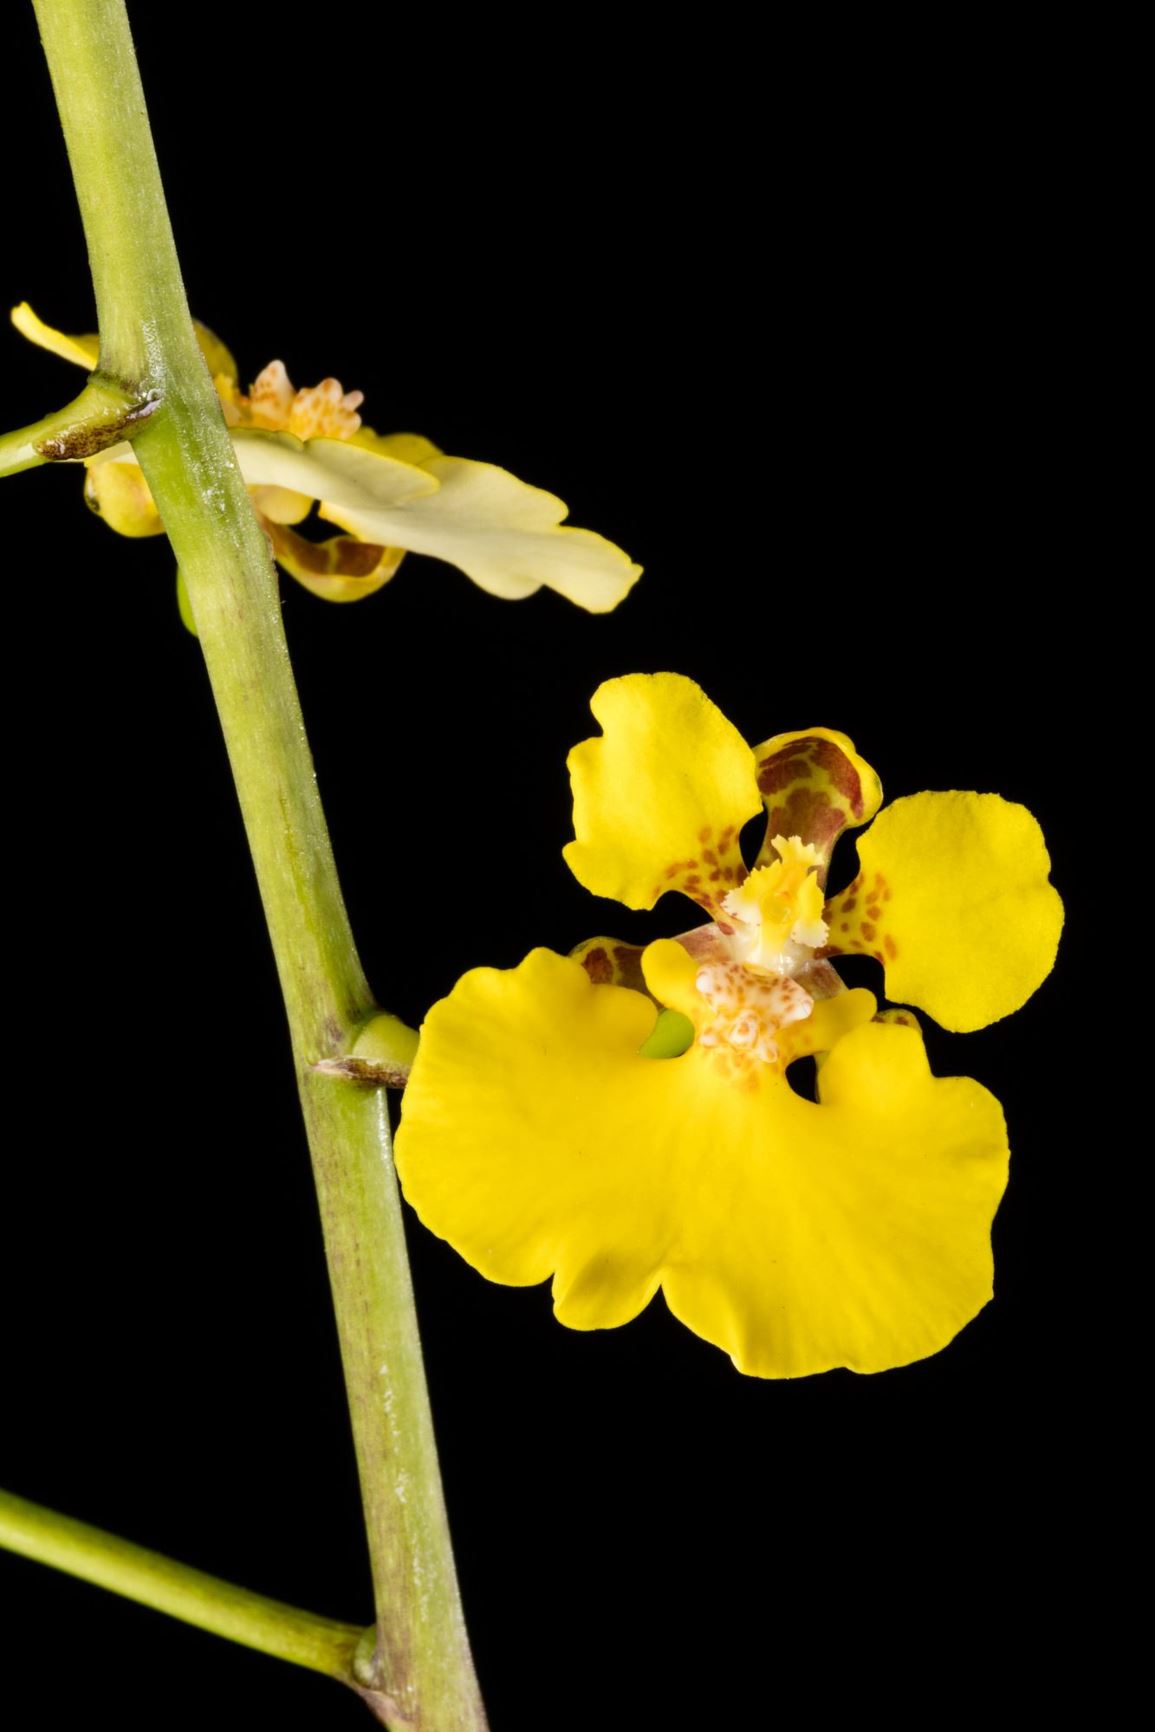 Rossioglossum ampliatum - Broad Pseudobulb Rossioglossum, Turtle Shell Orchid, Yellow Bee, La Tortuga, Lluvia de Oro